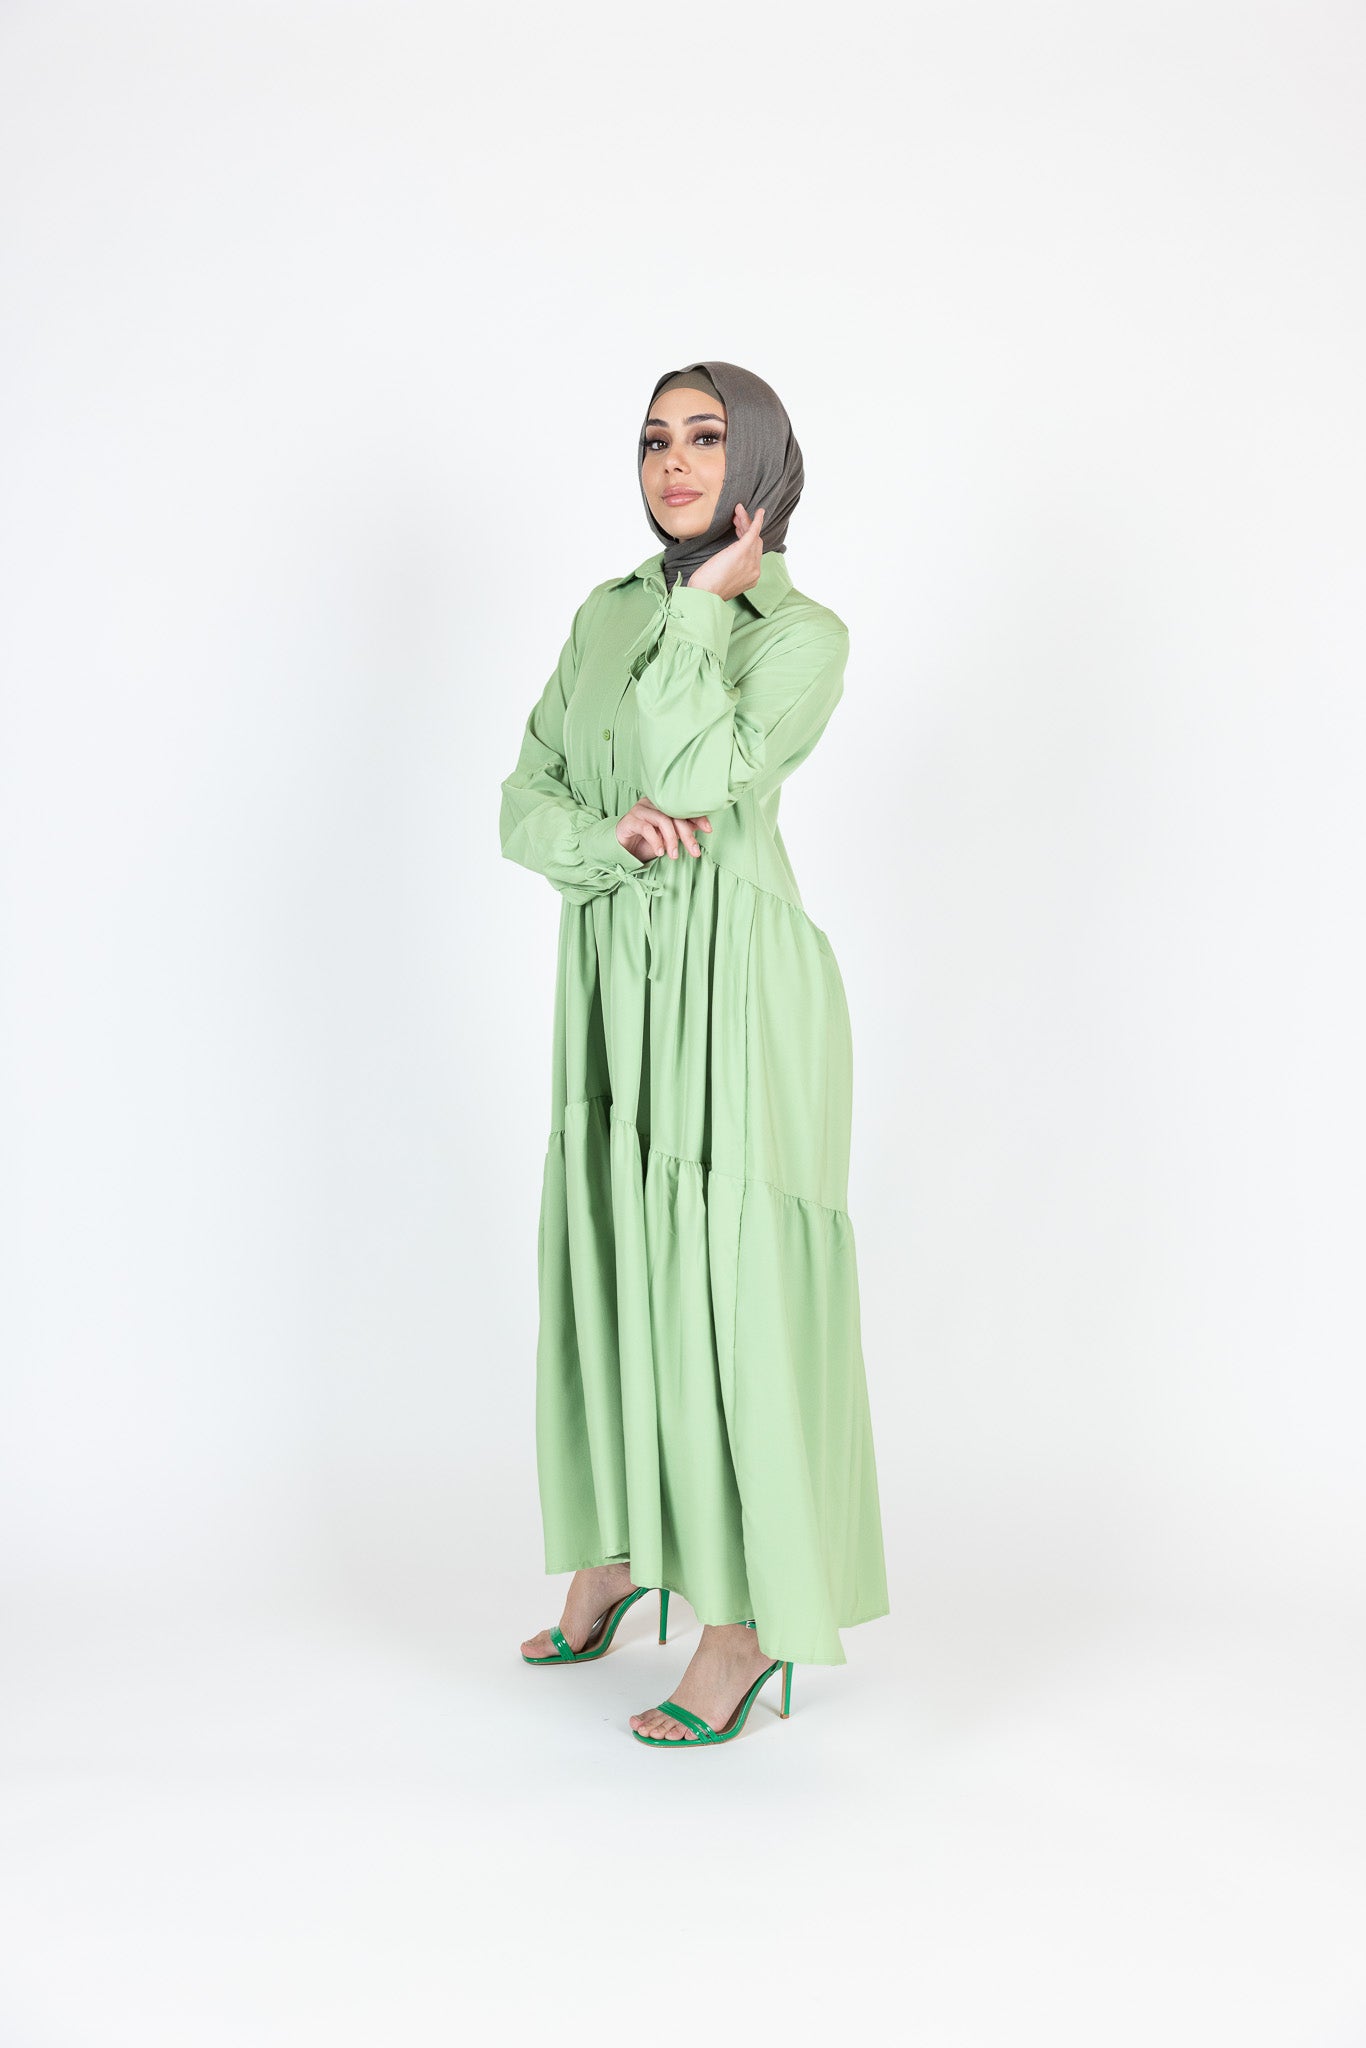 WS00373Green-dress-abaya